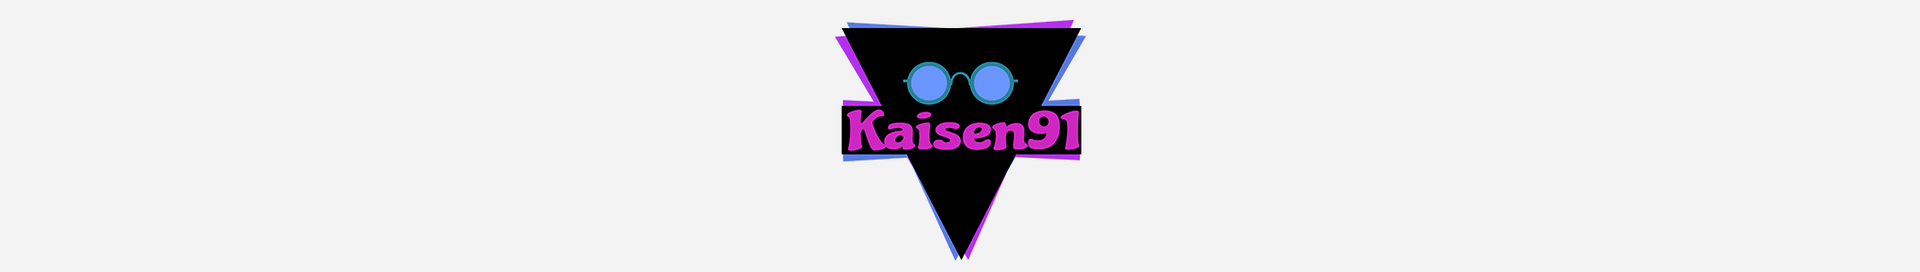 kaisen91